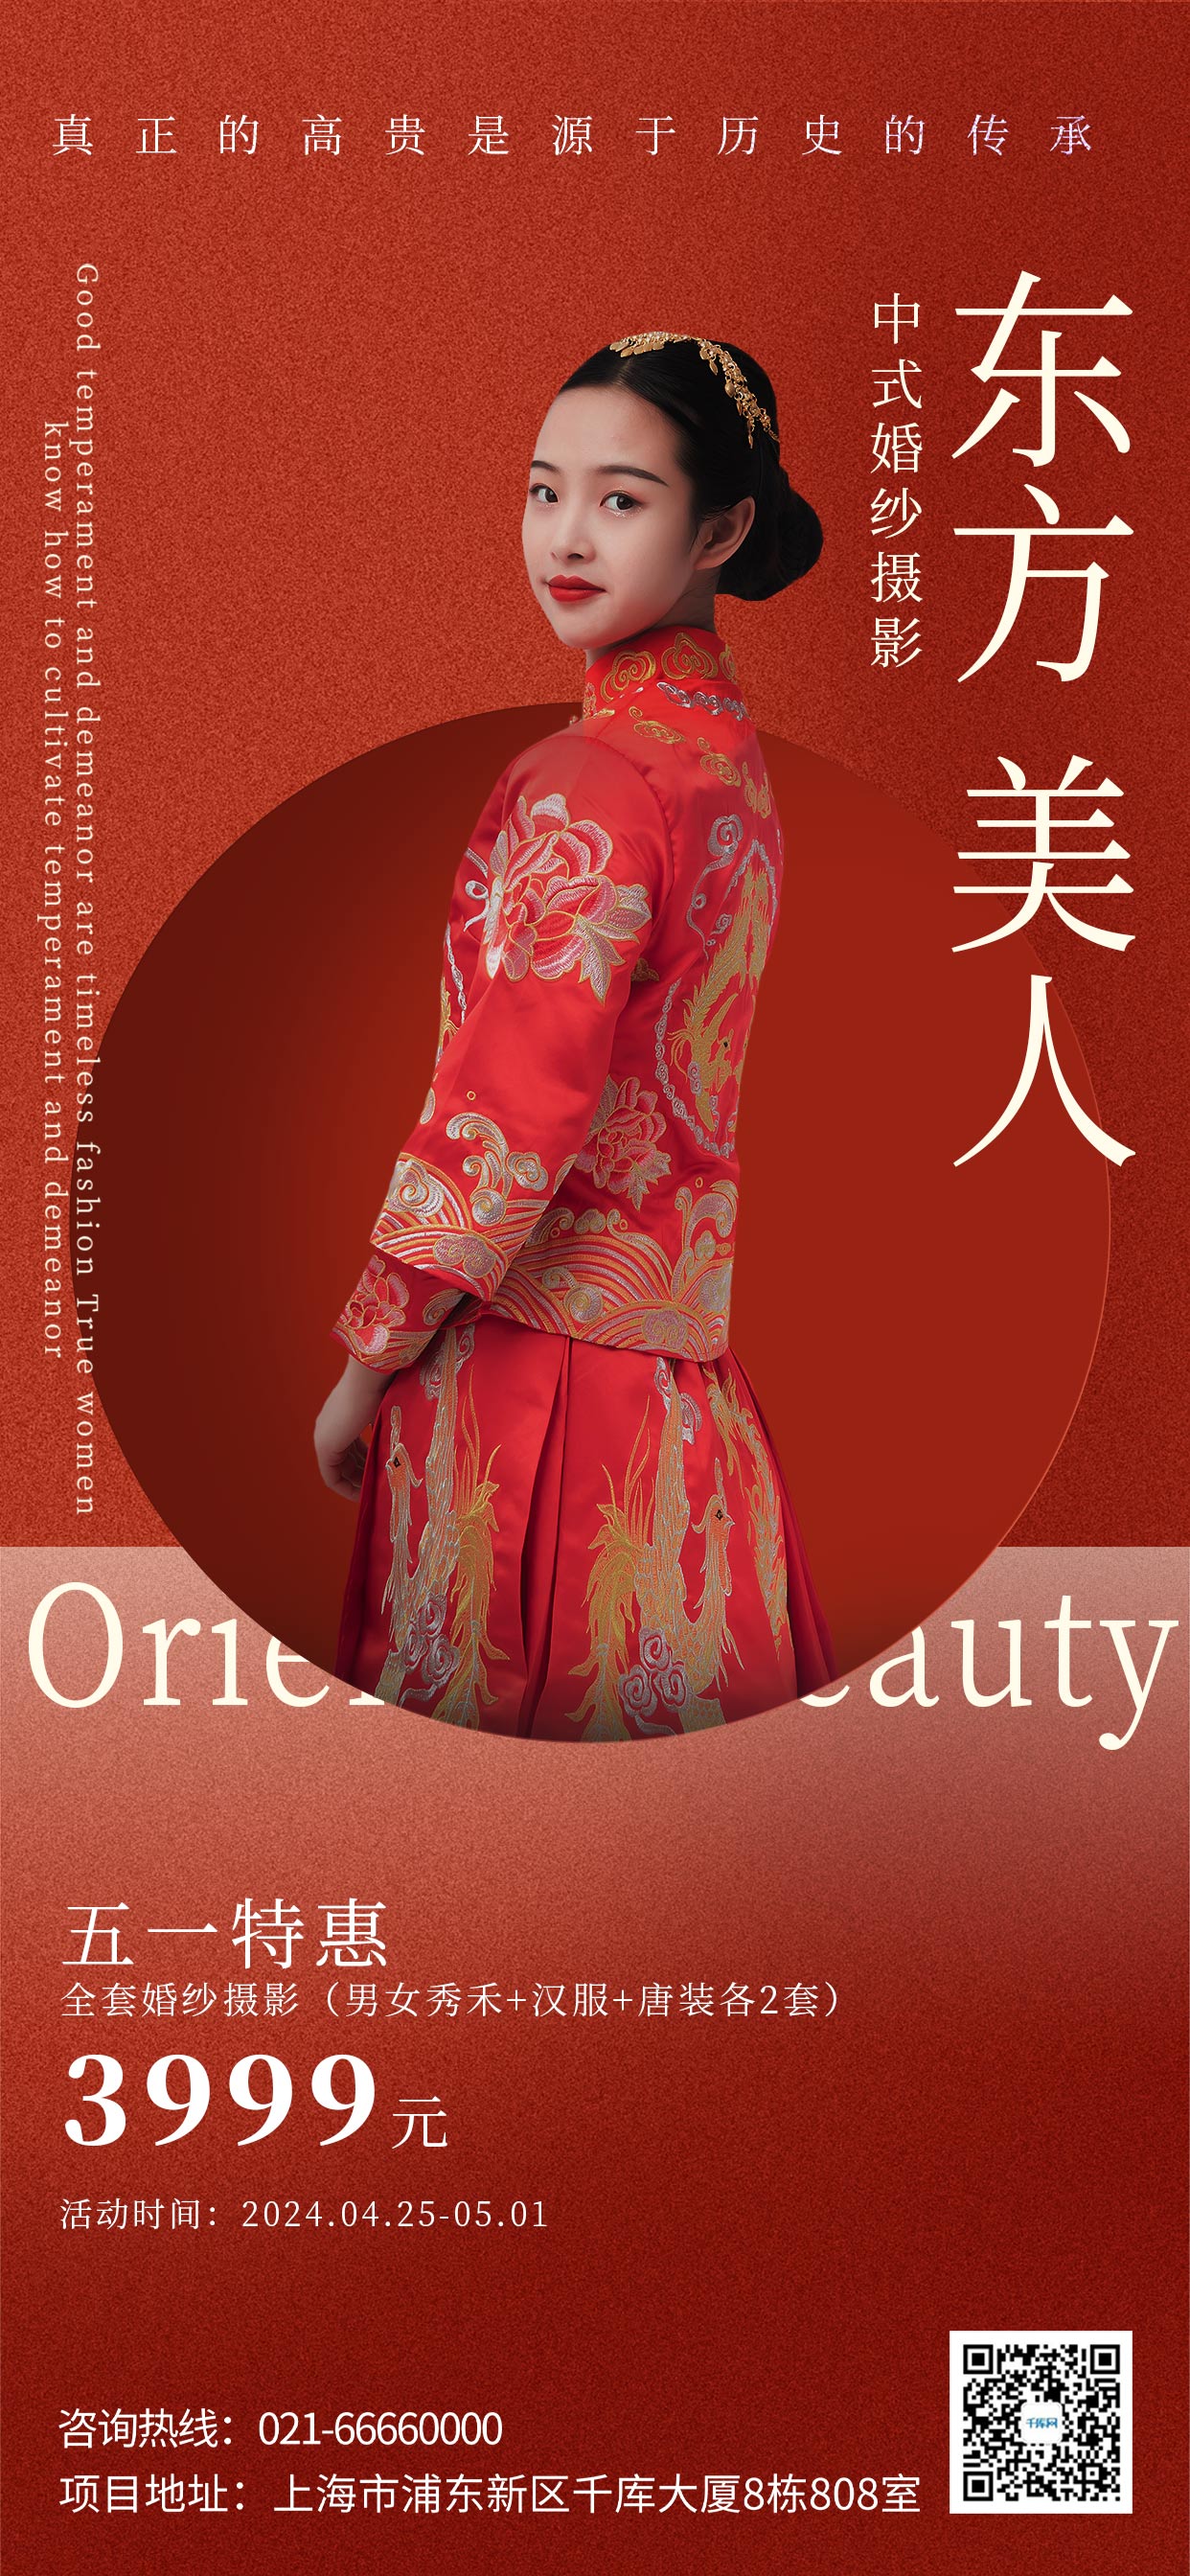 五一婚纱摄影中式秀禾红色中国风手机海报海报图片素材图片